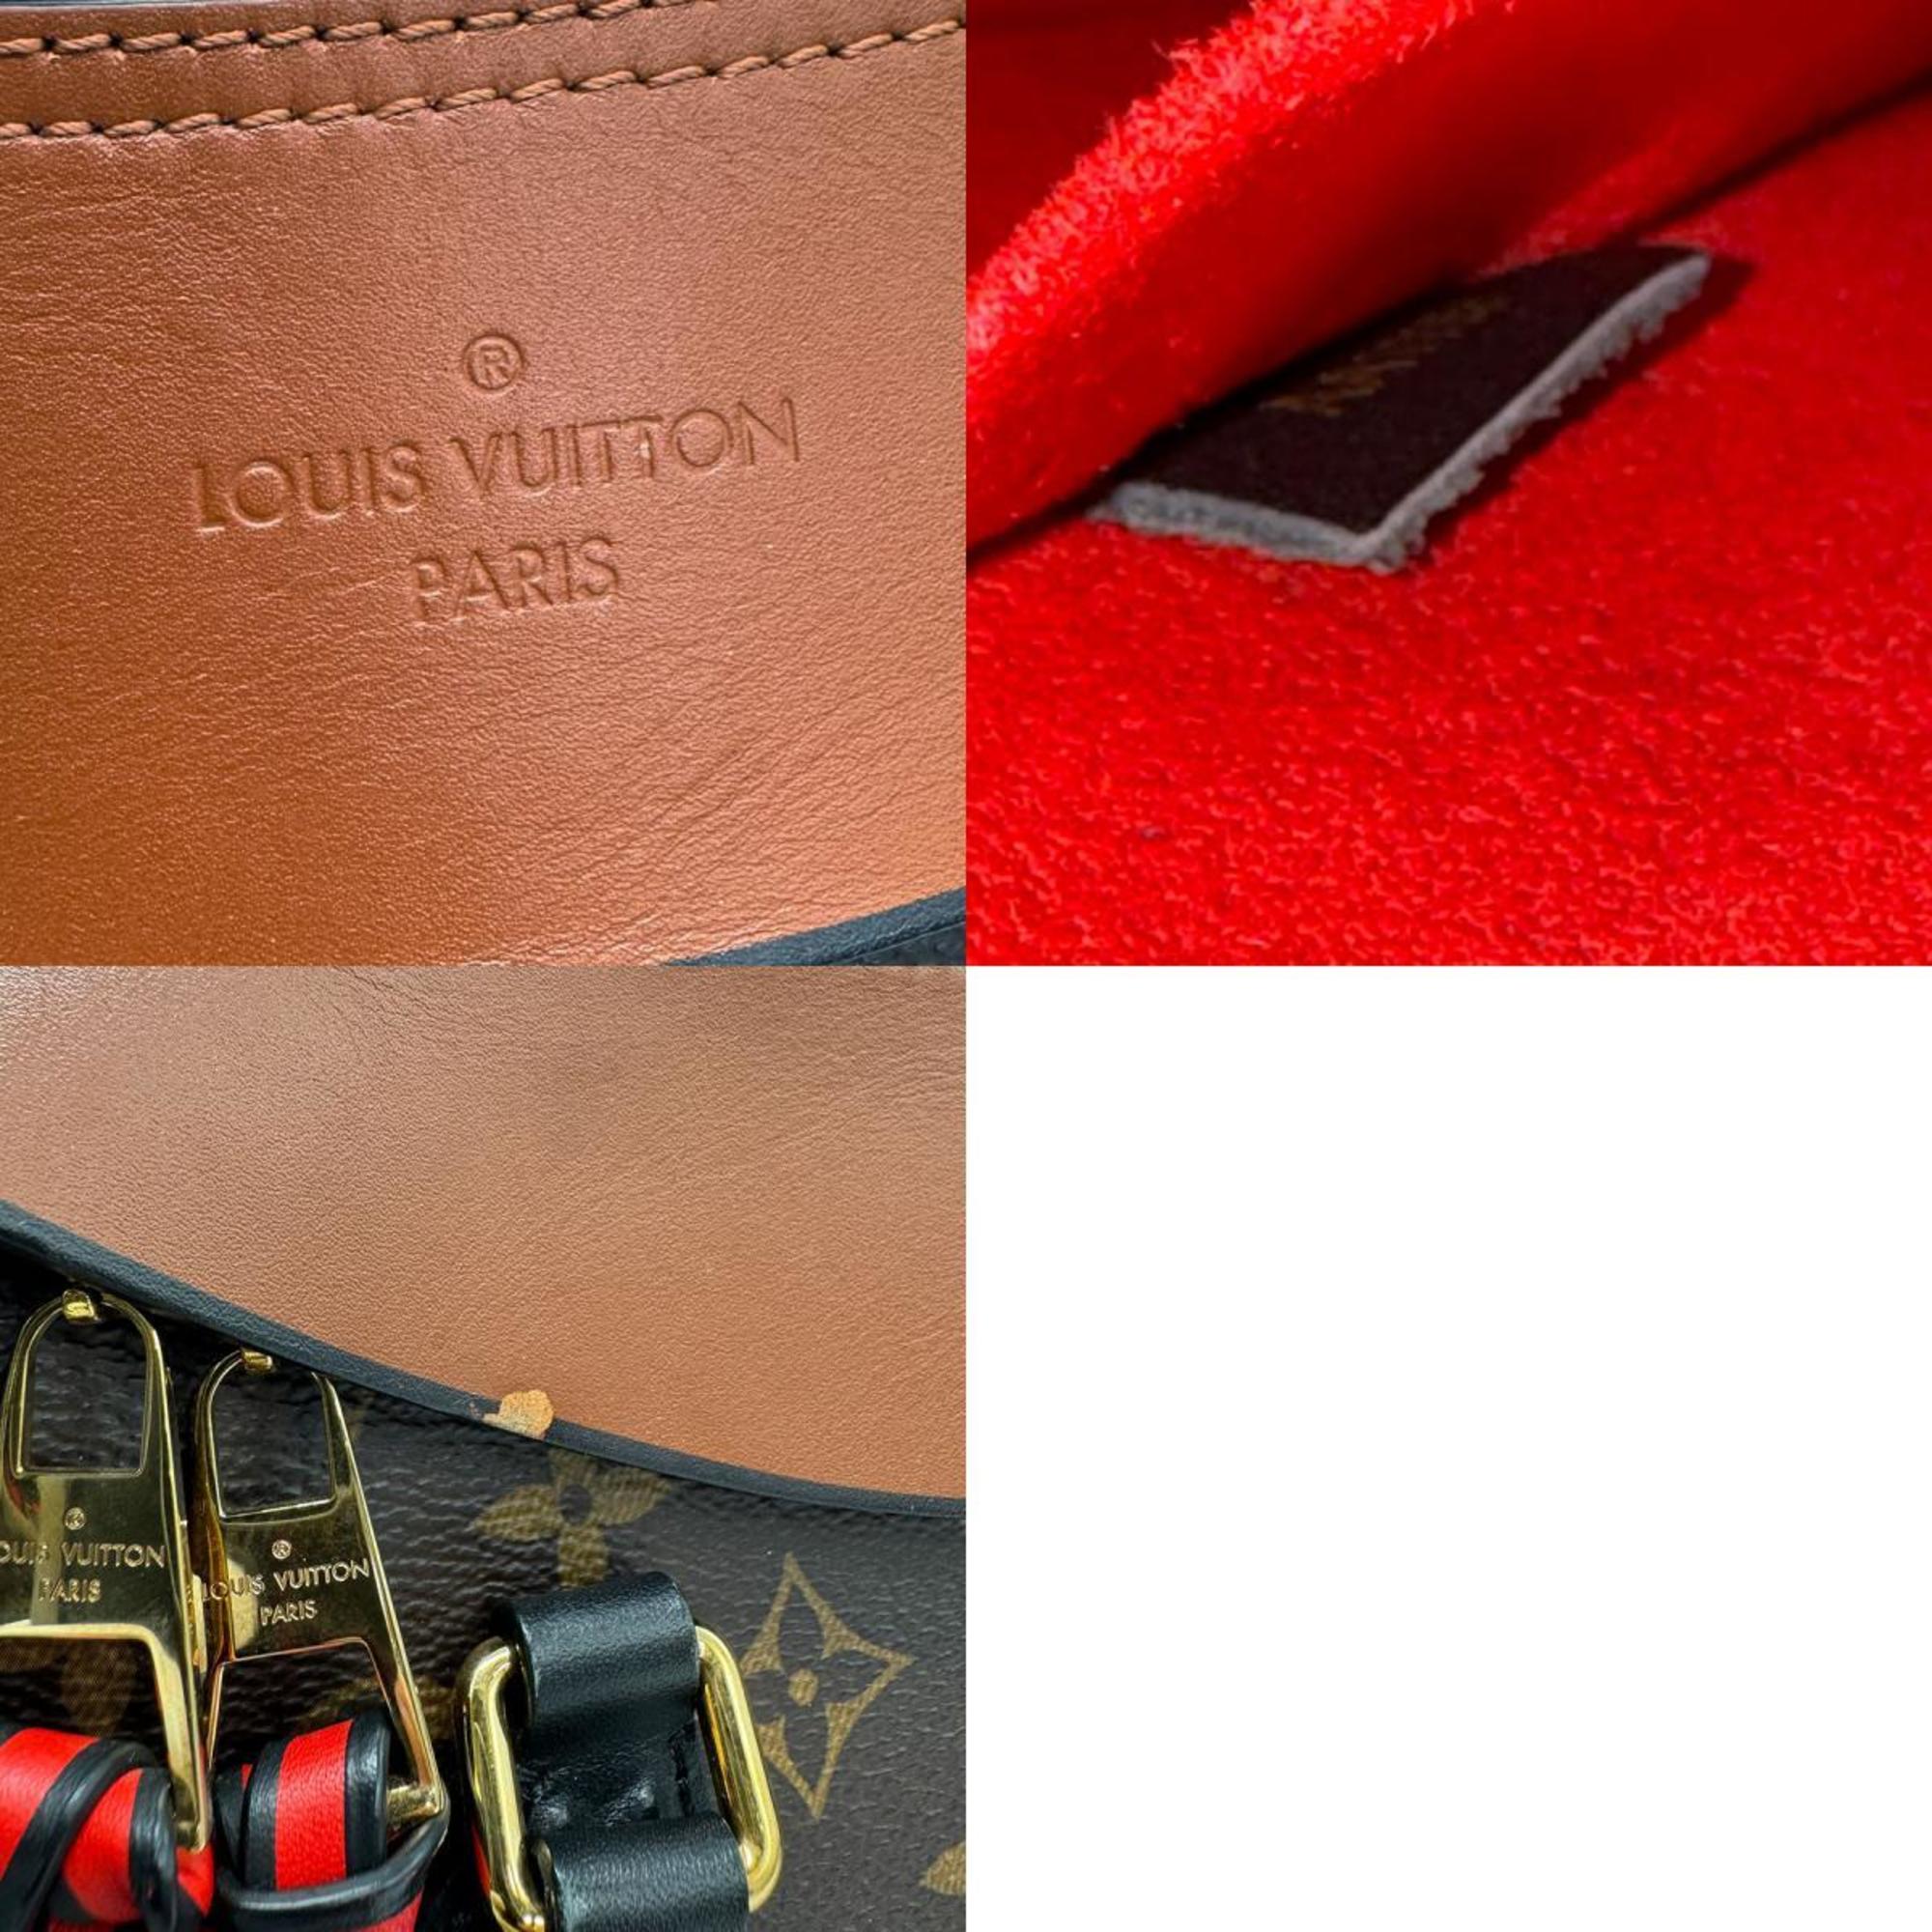 Louis Vuitton LOUIS VUITTON Handbag Shoulder Bag Monogram Tuileries Tote Canvas Leather Brown Black Gold Women's M41456 z1049